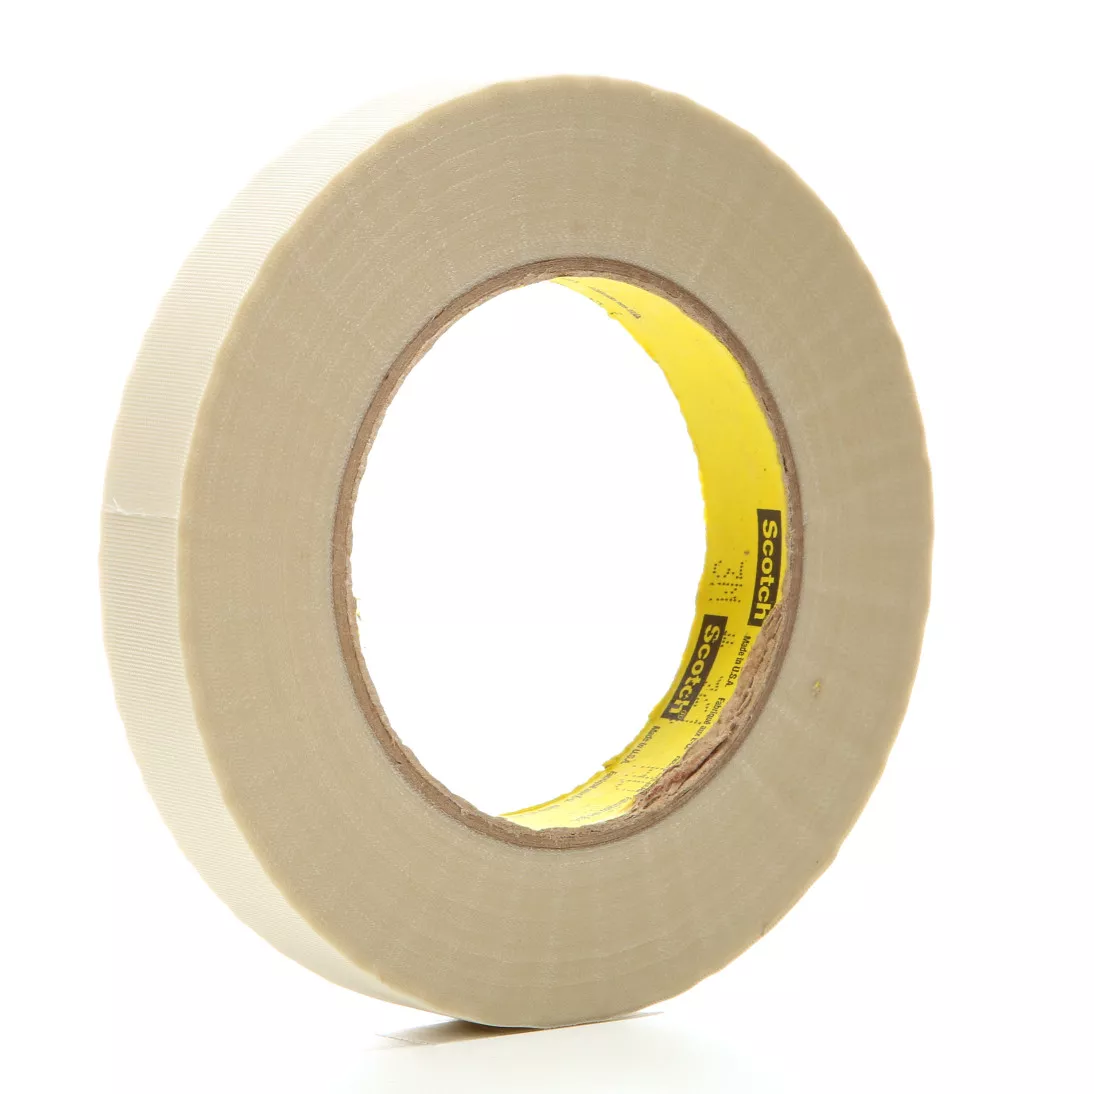 3M™ Glass Cloth Tape 361, White, 3/4 in x 60 yd, 6.4 mil, 48 rolls per
case